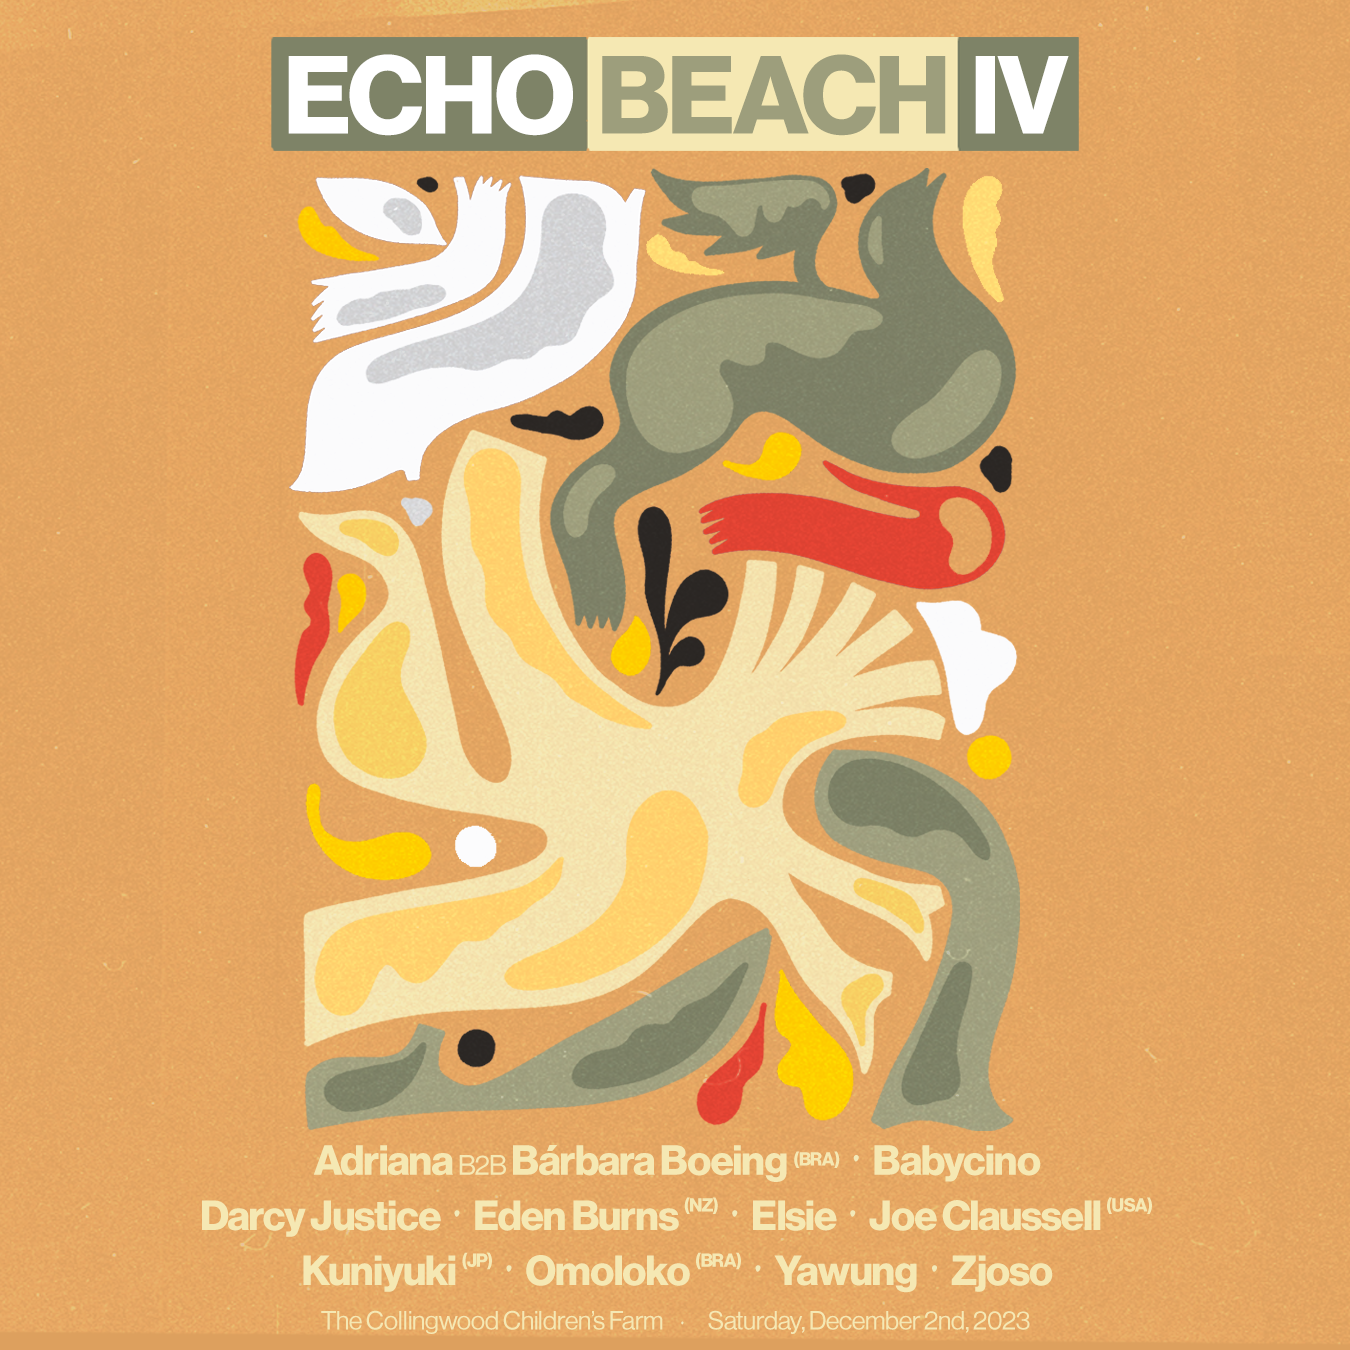 Echo Beach IV - フライヤー表